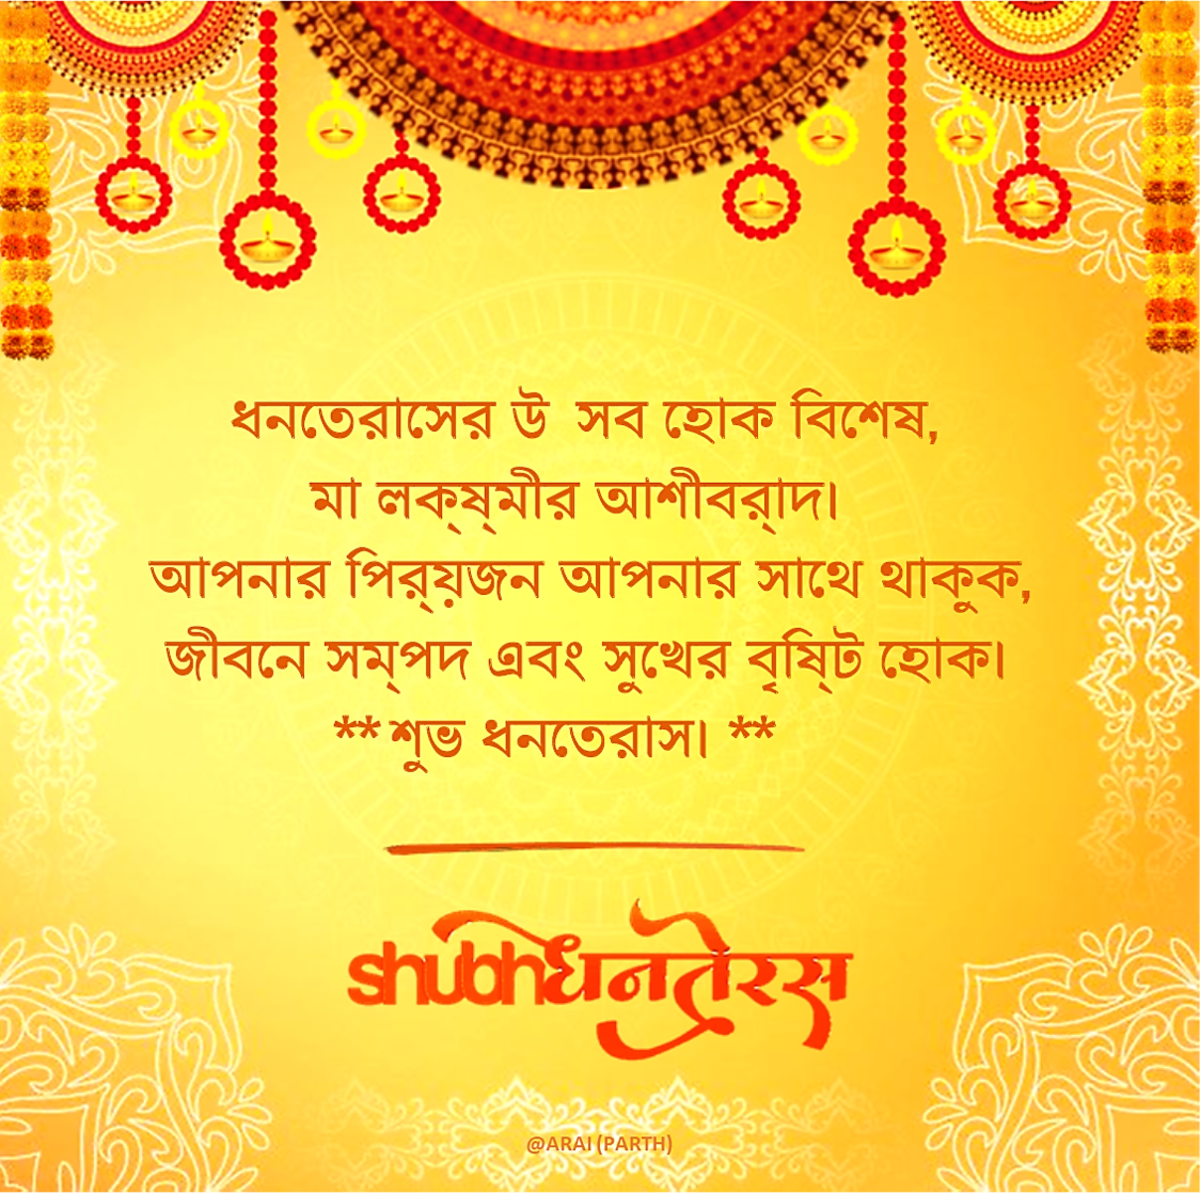 Dhanteras Wished in Bengali Language